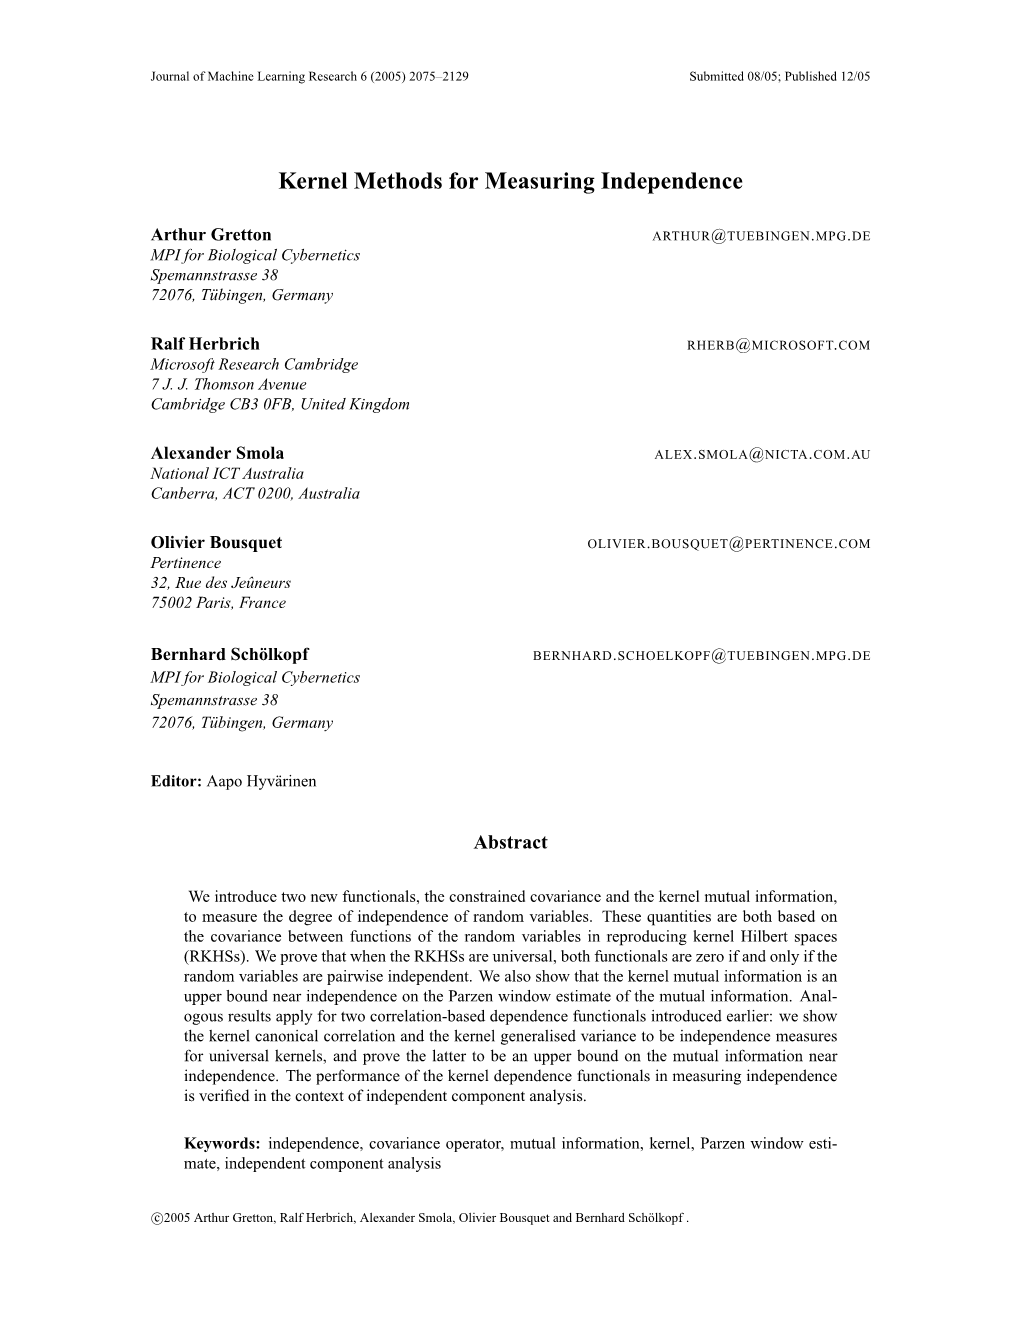 Kernel Methods for Measuring Independence